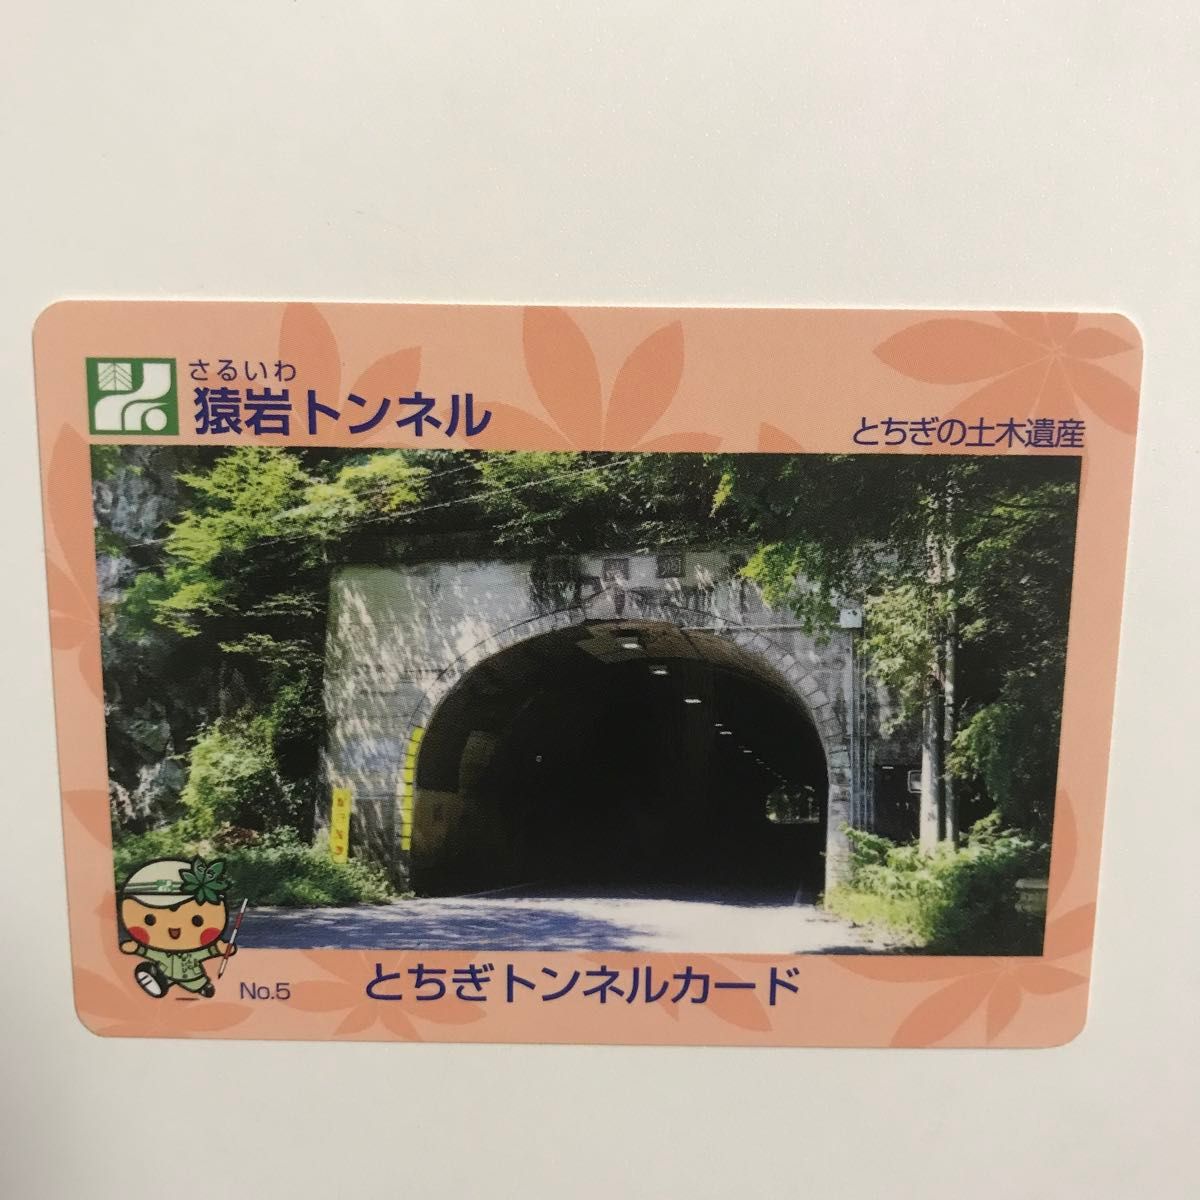 美品 とちぎトンネルカード 猿岩トンネル とちぎの土木遺産 遺産カード  とちぎ橋カード 栃木県